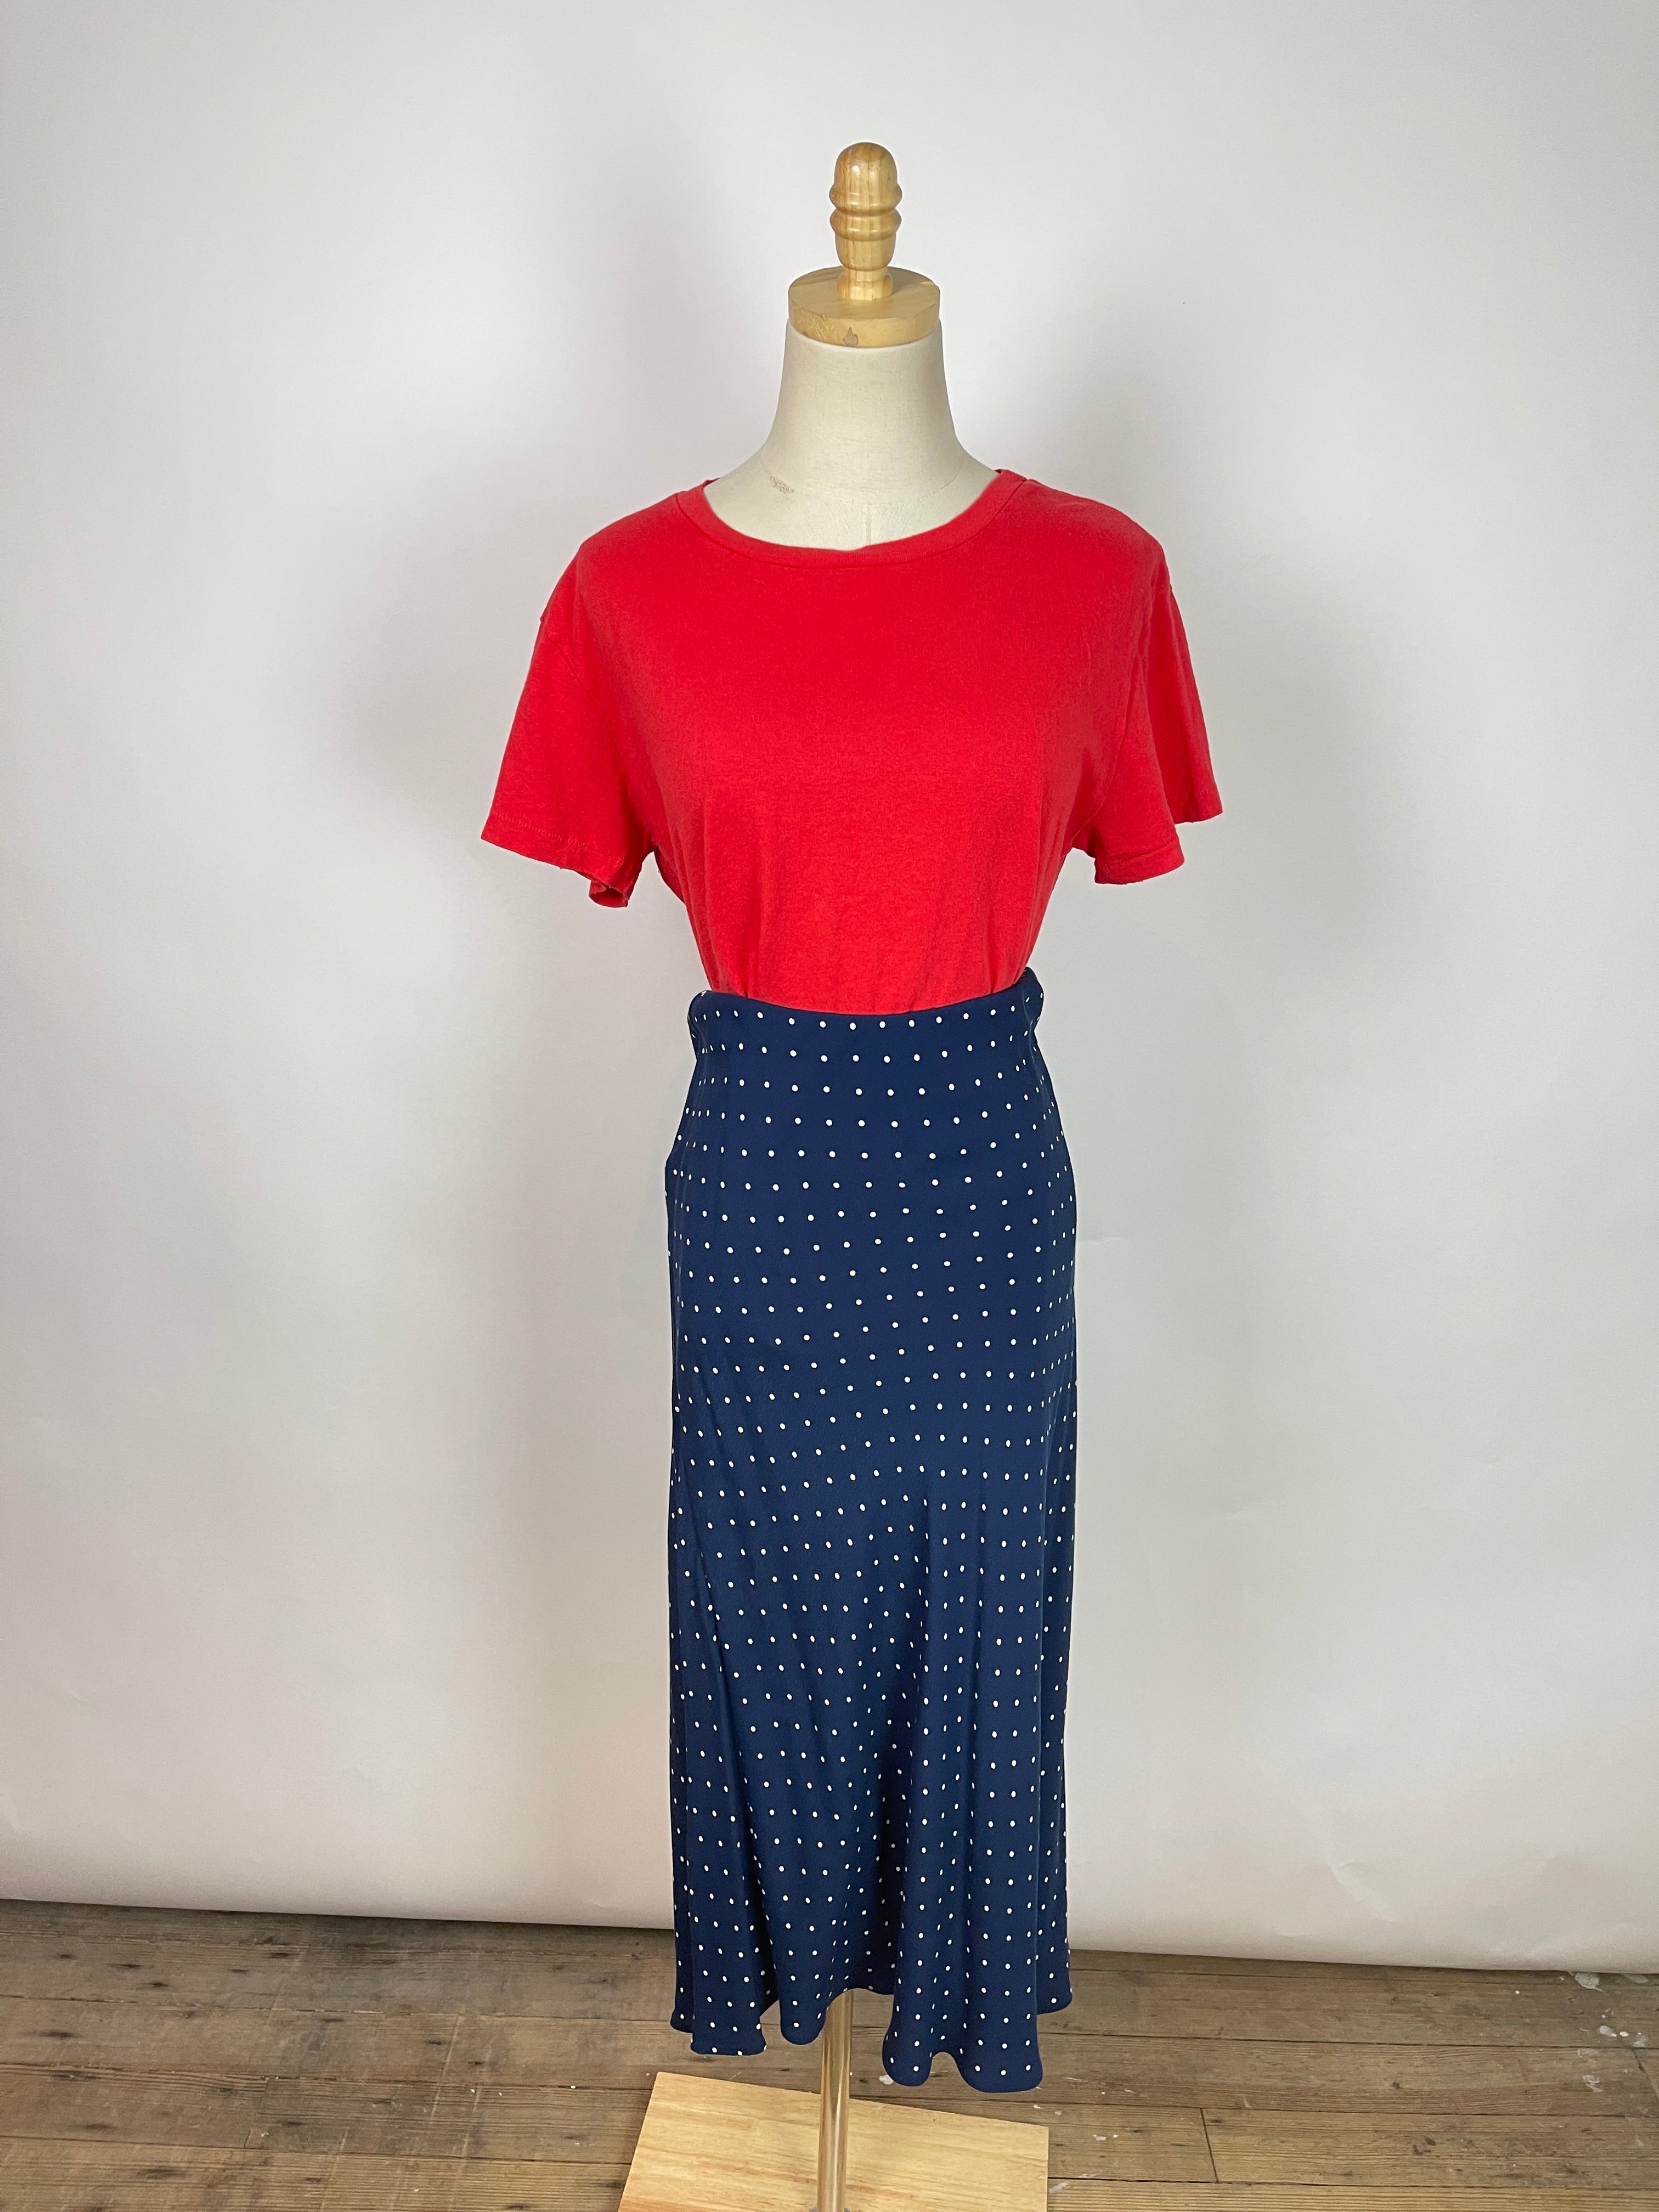 Madewell Navy Dot Skirt (XL/14)